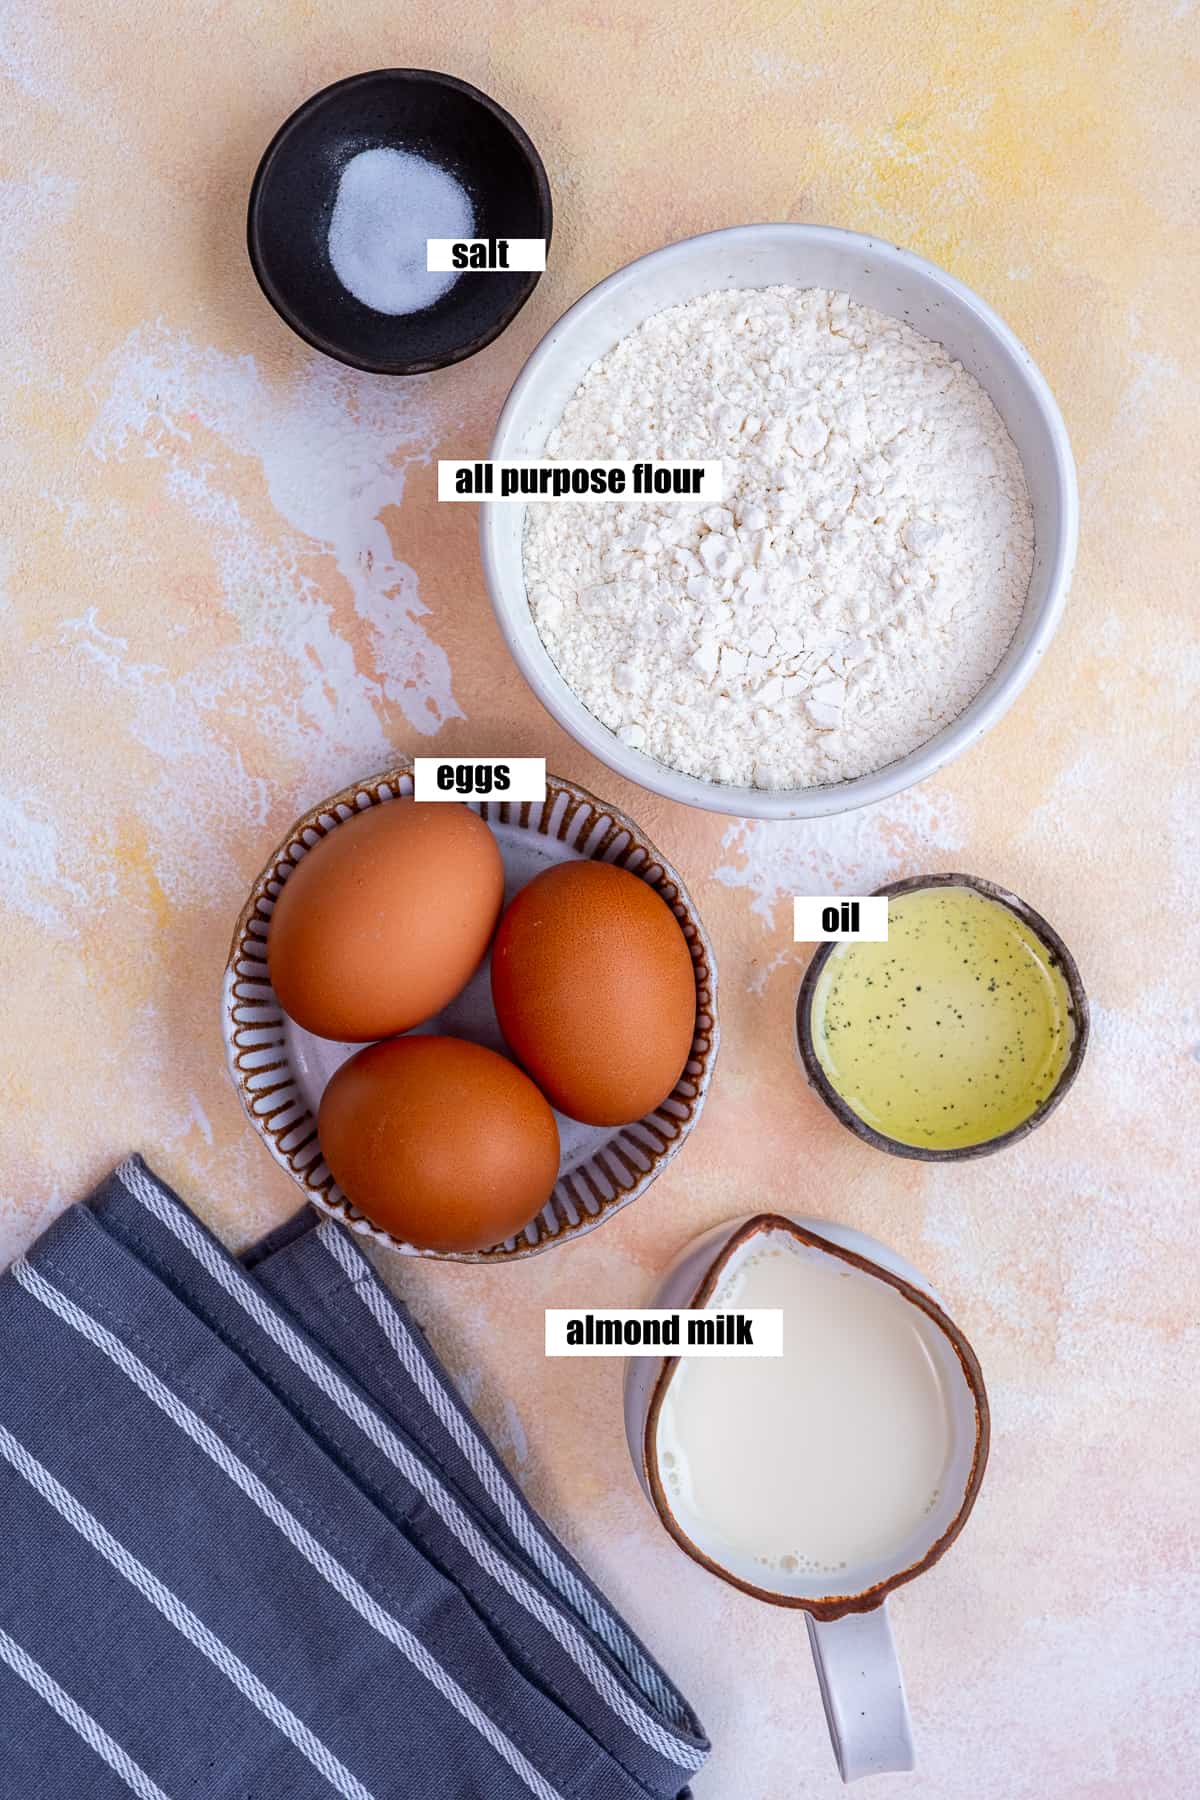 Salt, flour, eggs, oil and almond milk on a light background.